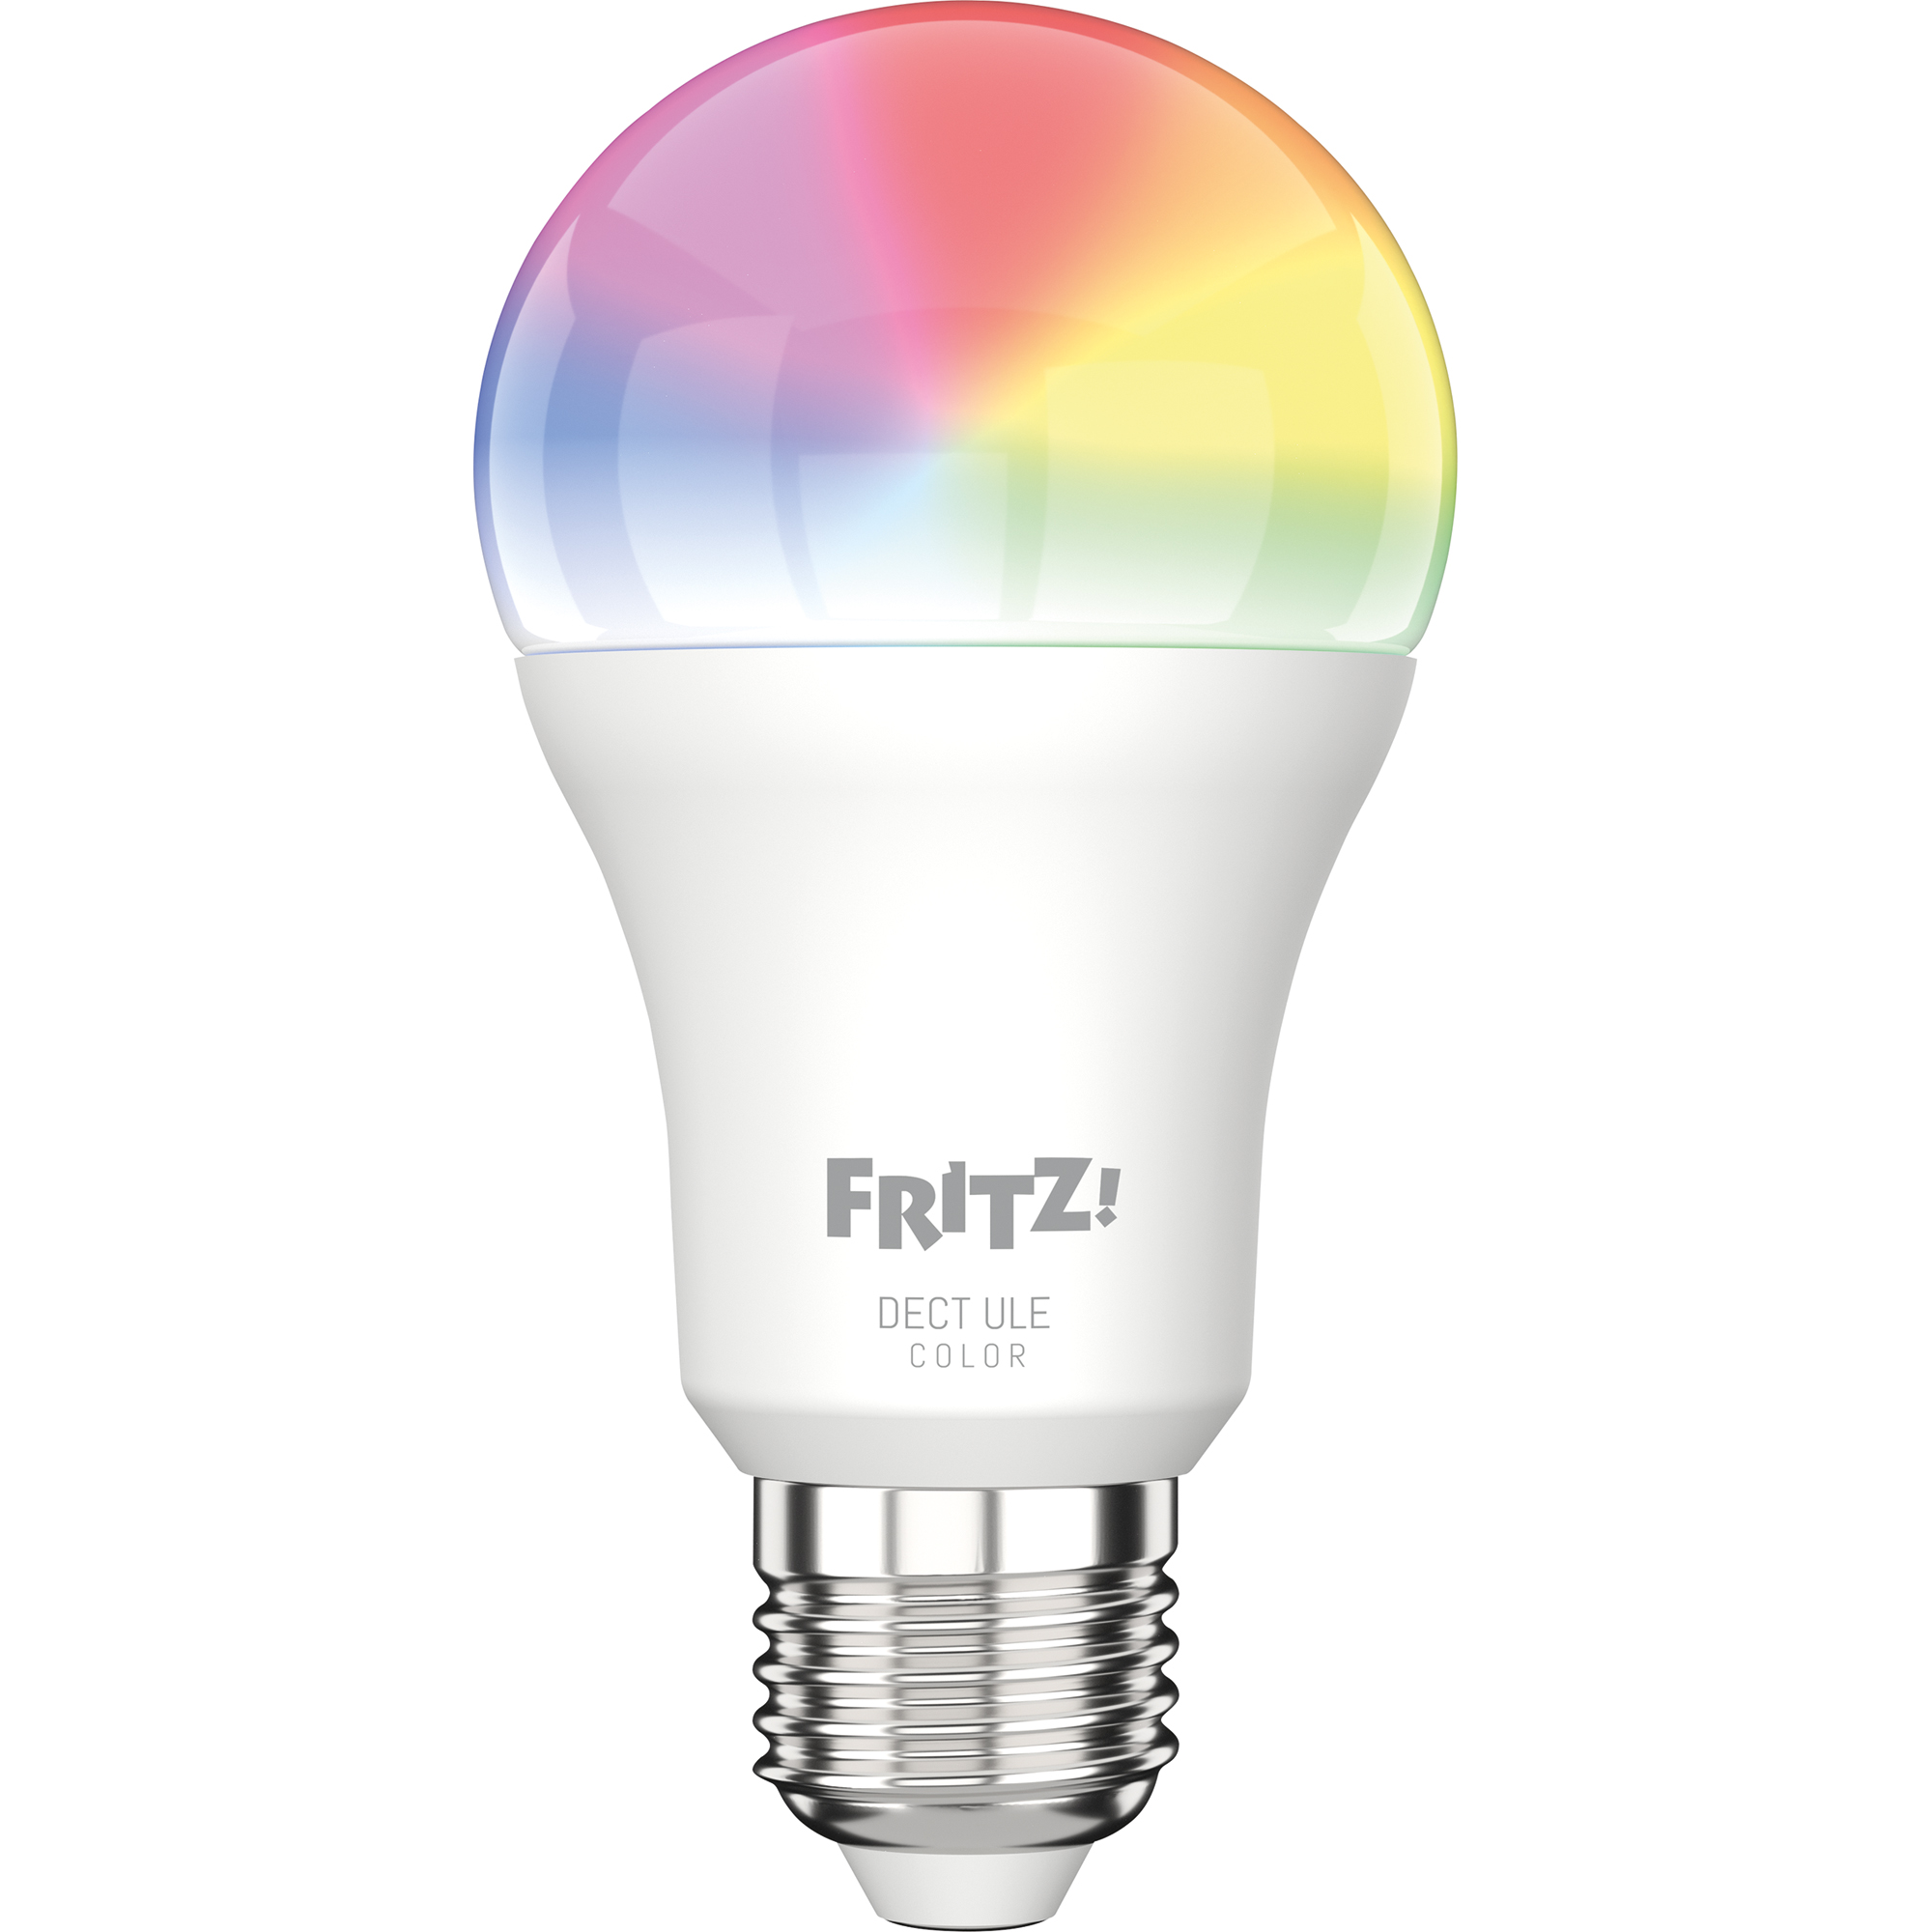 FRITZ! LED-Lampe FRITZ!DECT 500 20002909